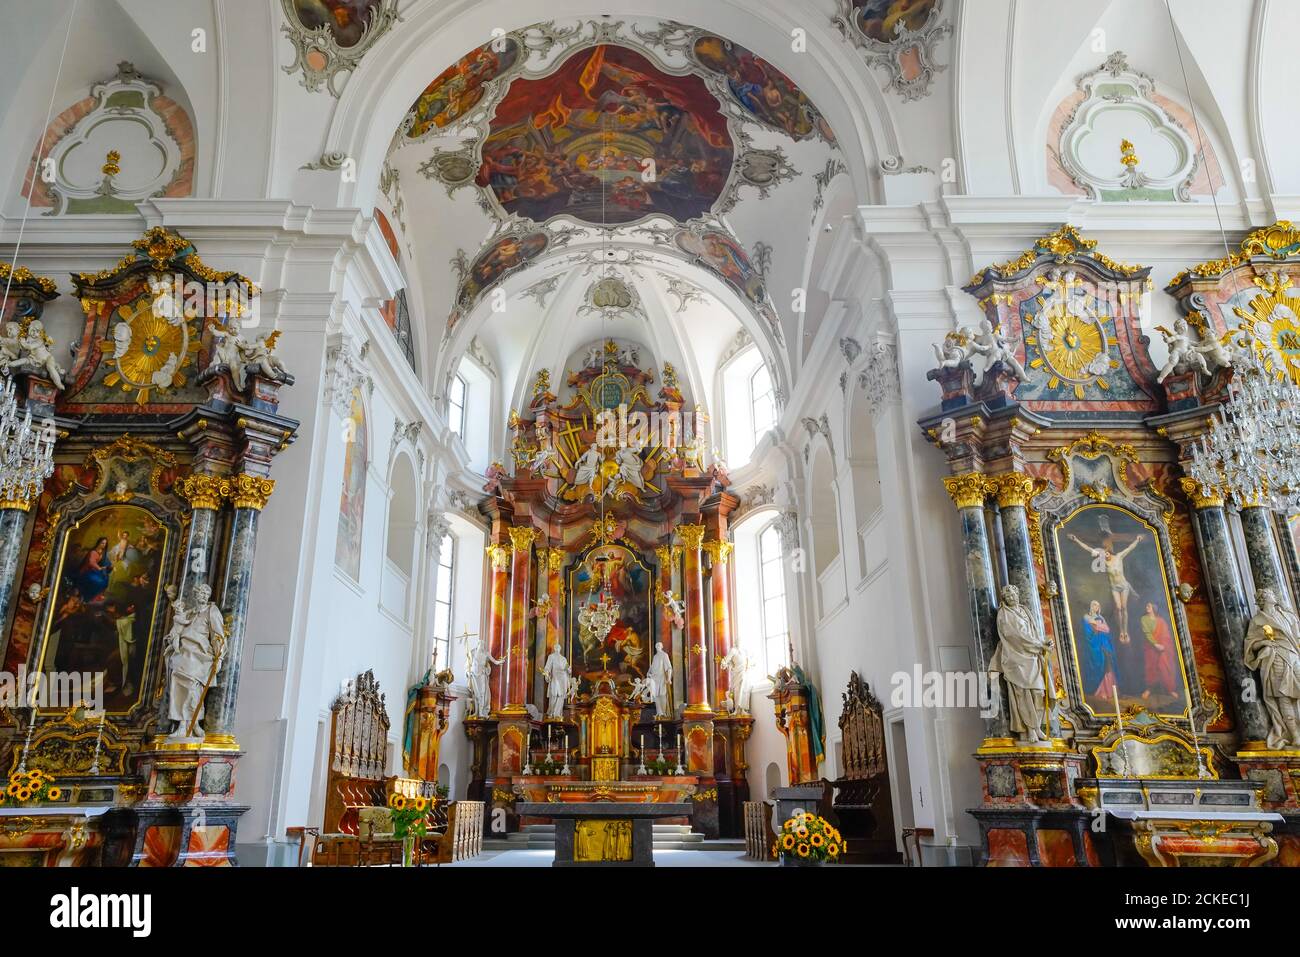 Plafond central de nef peintures dans l'église paroissiale catholique de Saint-Martin à Schwyz. Capitale du canton de Schwyz, Suisse. Banque D'Images